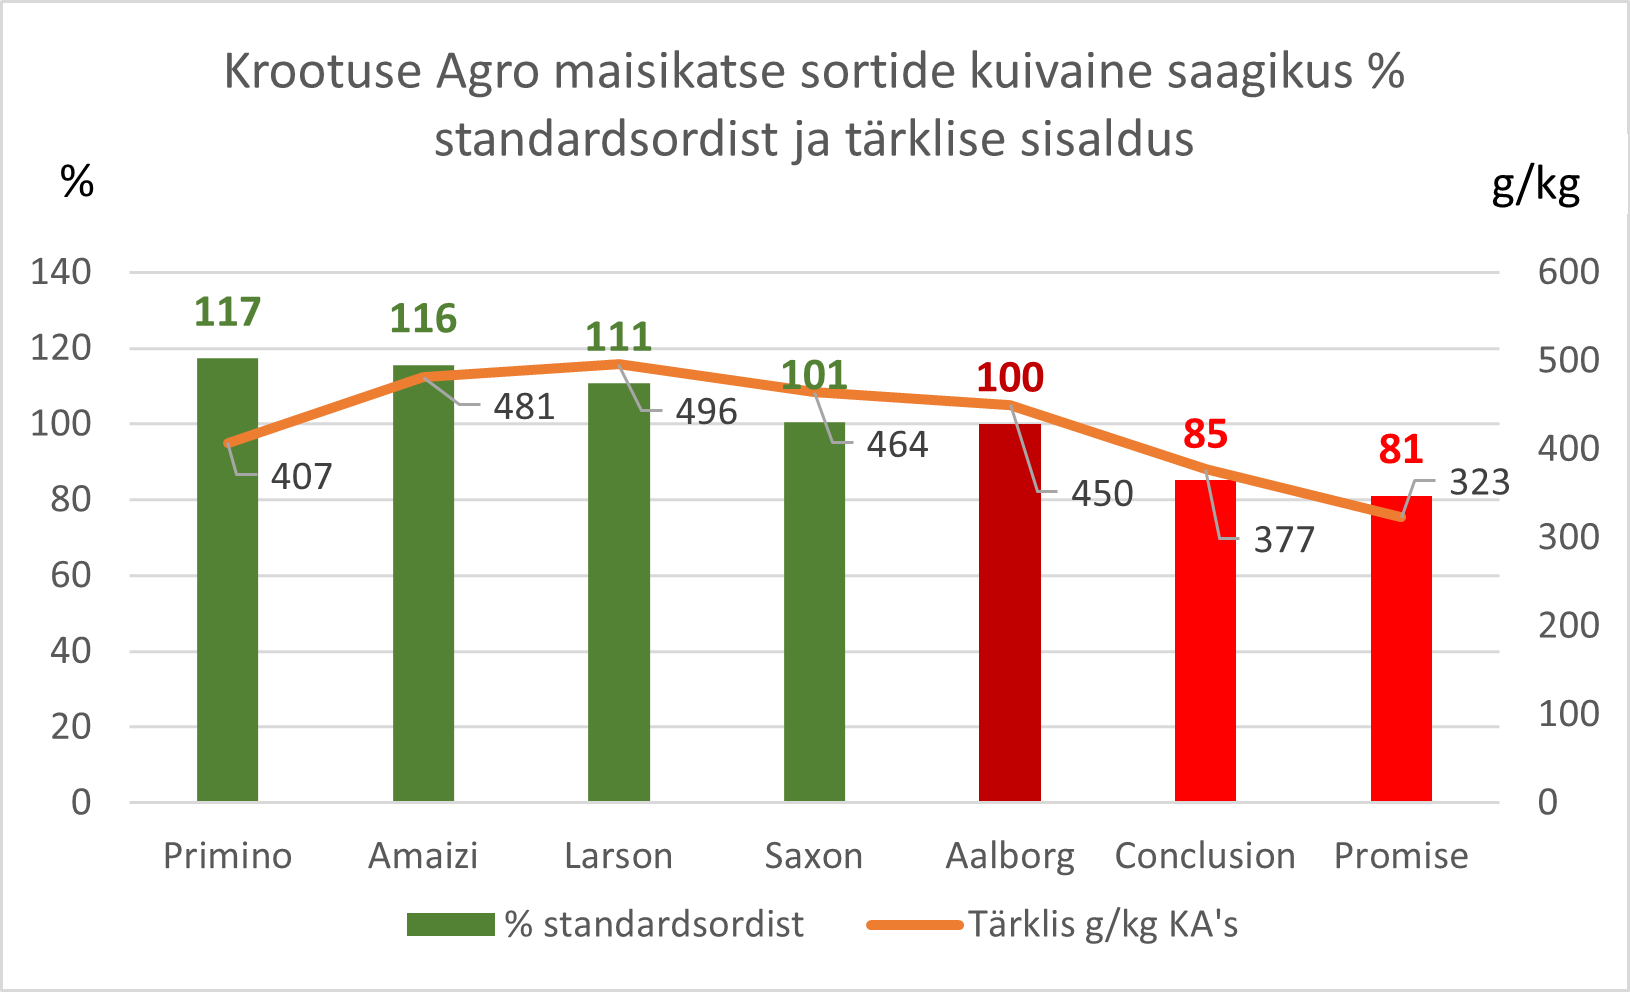 Krootuse Agro maisikatse sortide kuivaine saagikus % standardsordist ja tärklisesisaldus